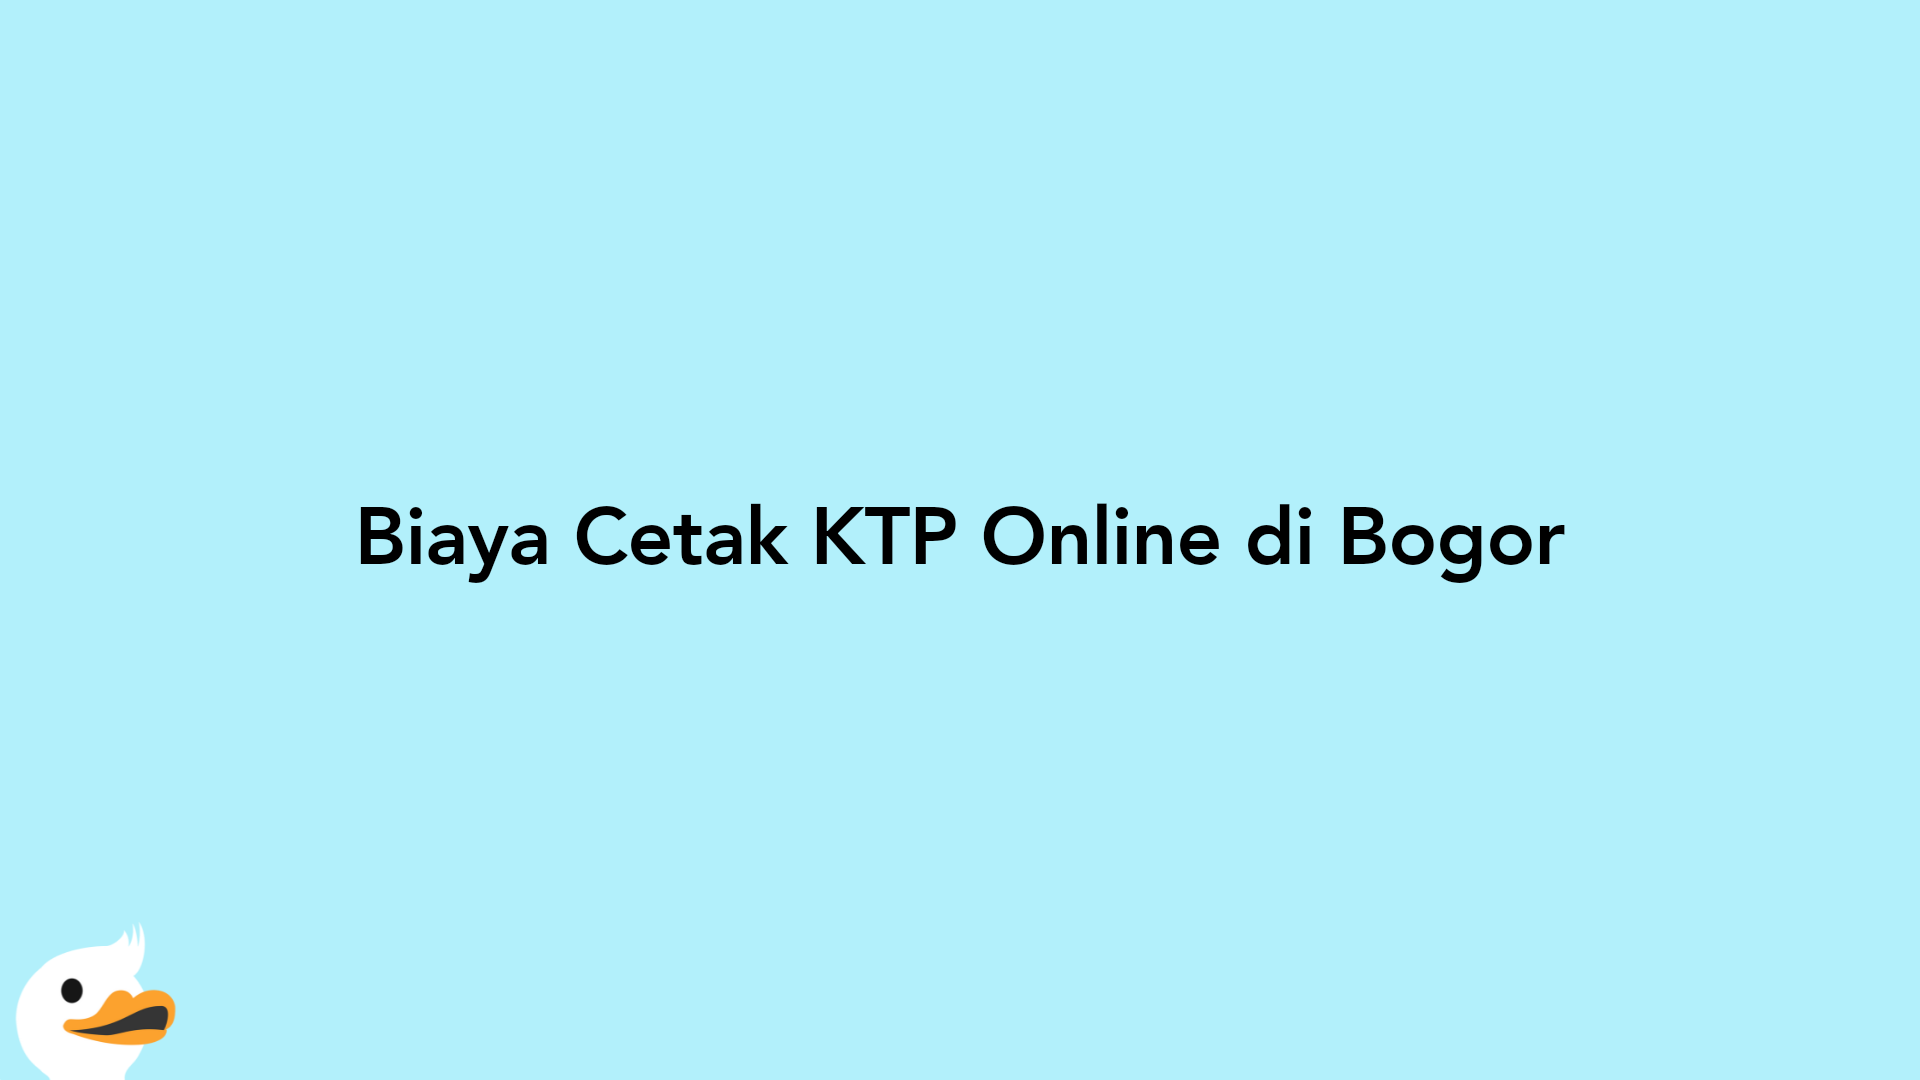 Biaya Cetak KTP Online di Bogor